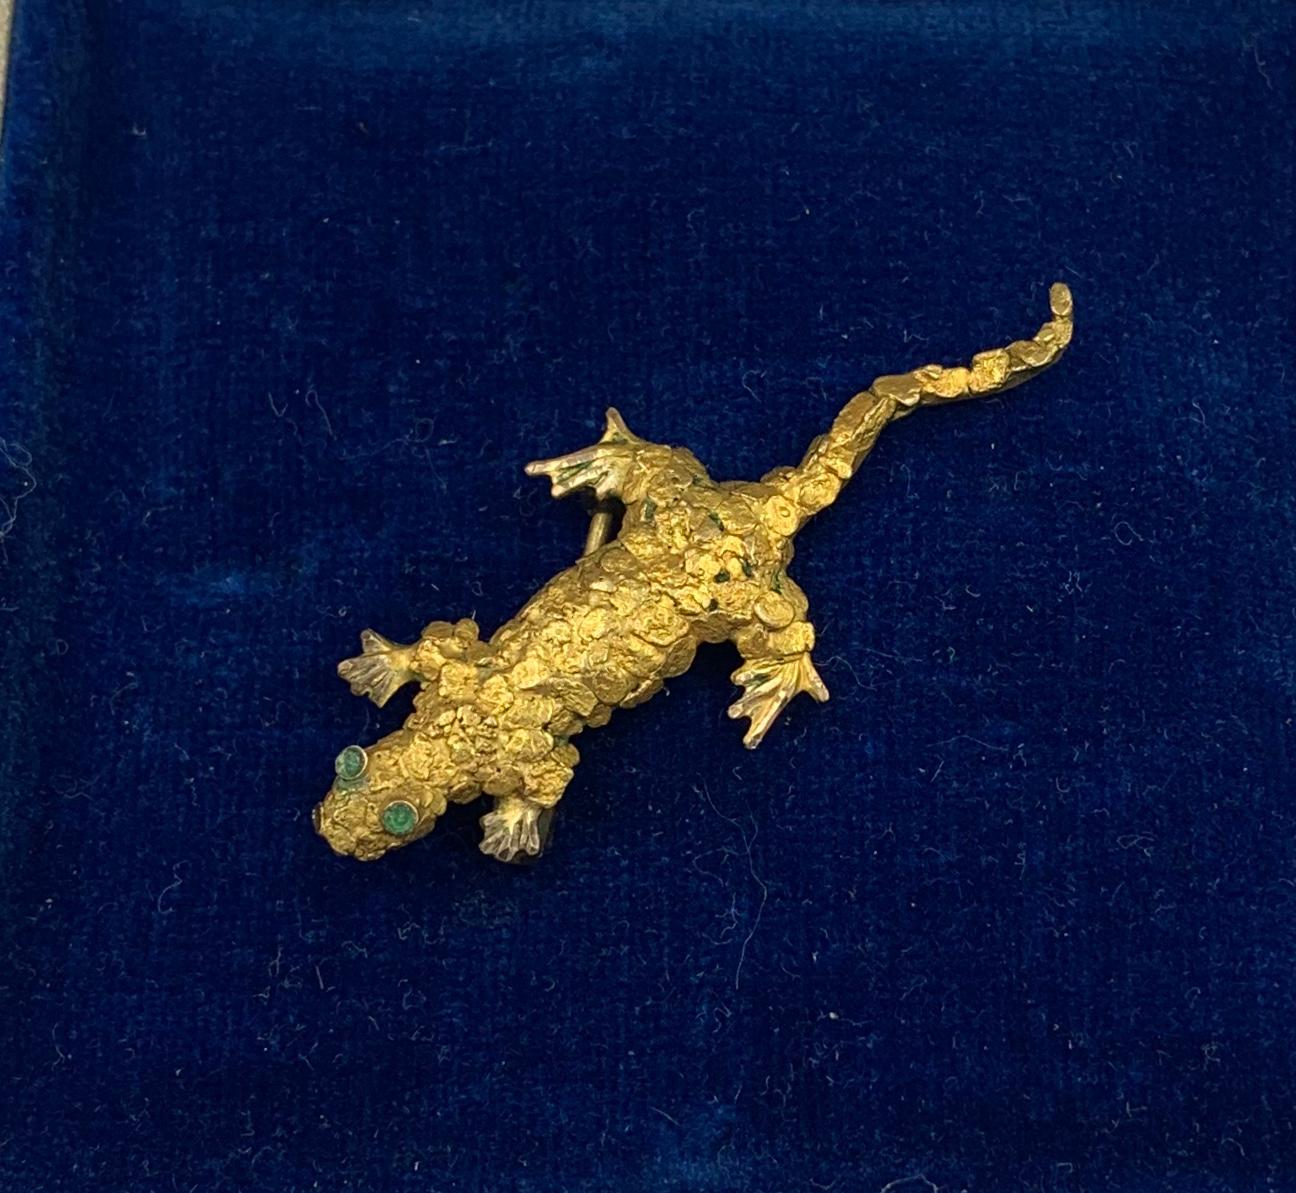 Une adorable broche lézard, gecko rétro moderne du milieu du siècle avec des yeux en émeraude en or 10 carats.  Le merveilleux lézard est fait de pépites d'or jaune 10 carats.  Le lézard a des yeux d'émeraude étincelants.  Le lézard a un superbe